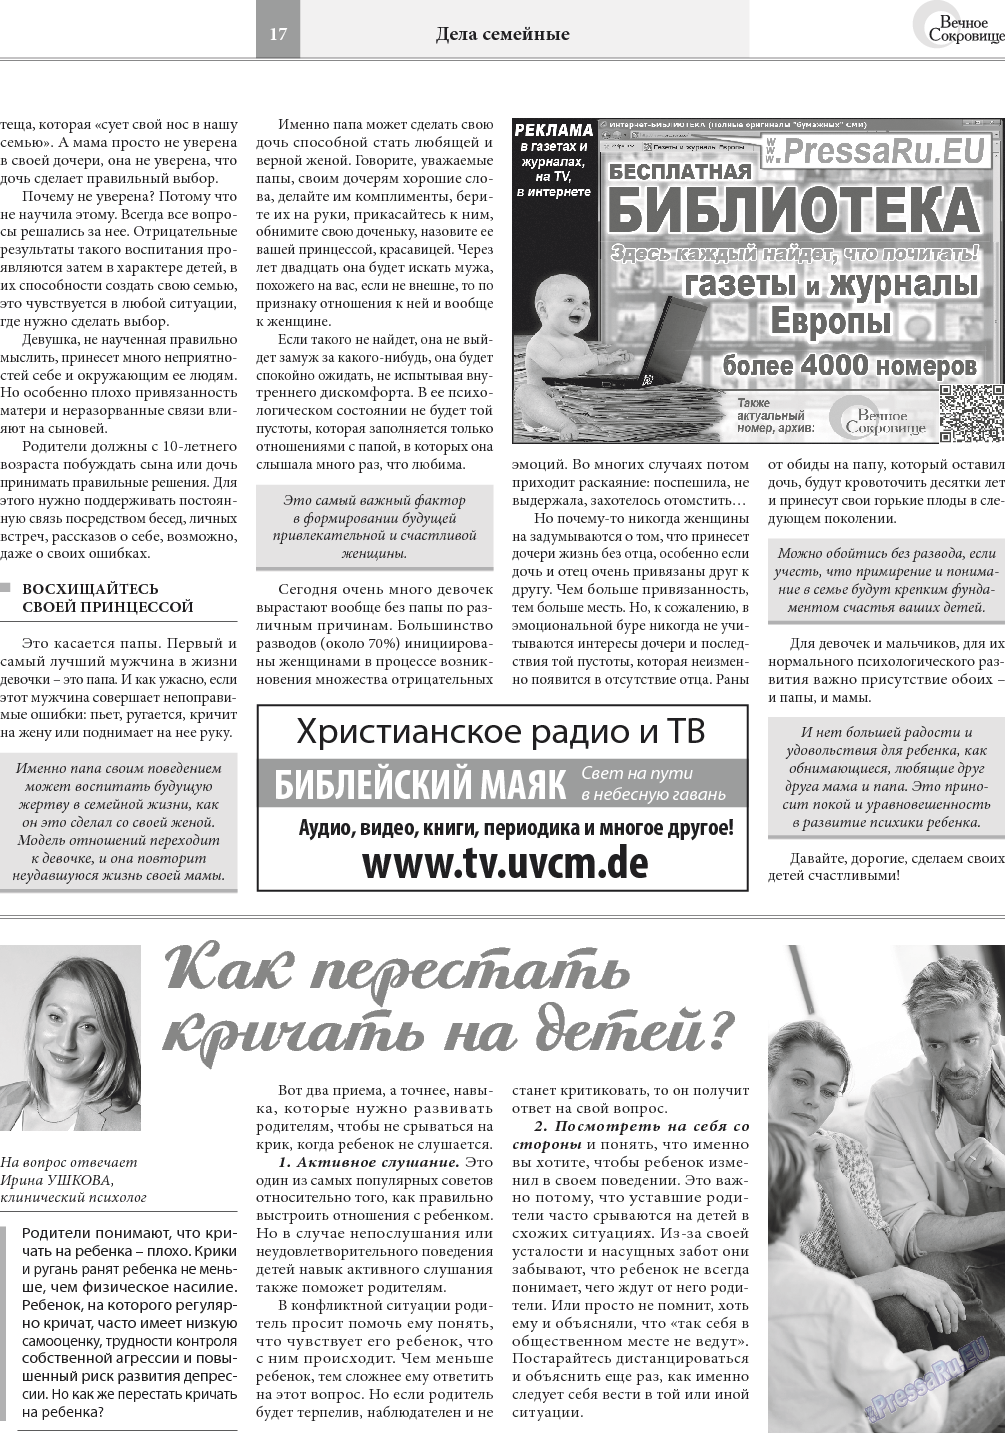 Вечное сокровище (газета). 2018 год, номер 1, стр. 17